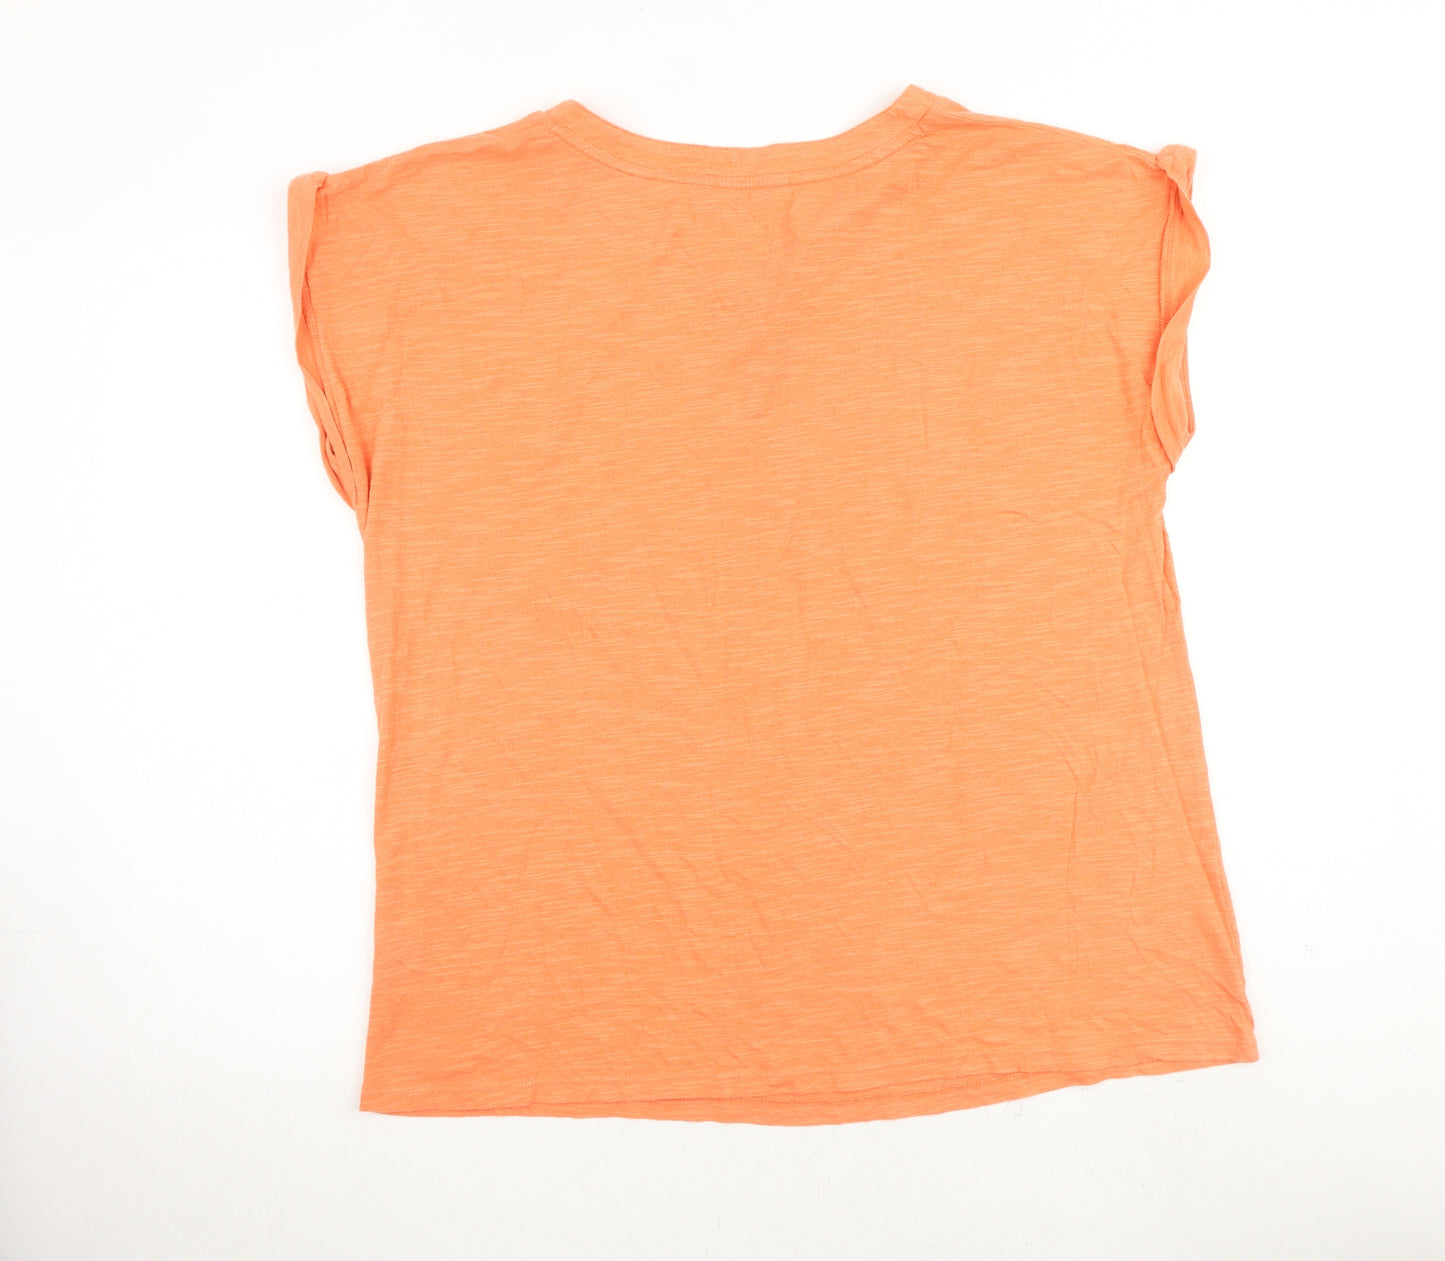 Crew Clothing Womens Orange Cotton Basic T-Shirt Size 14 Henley